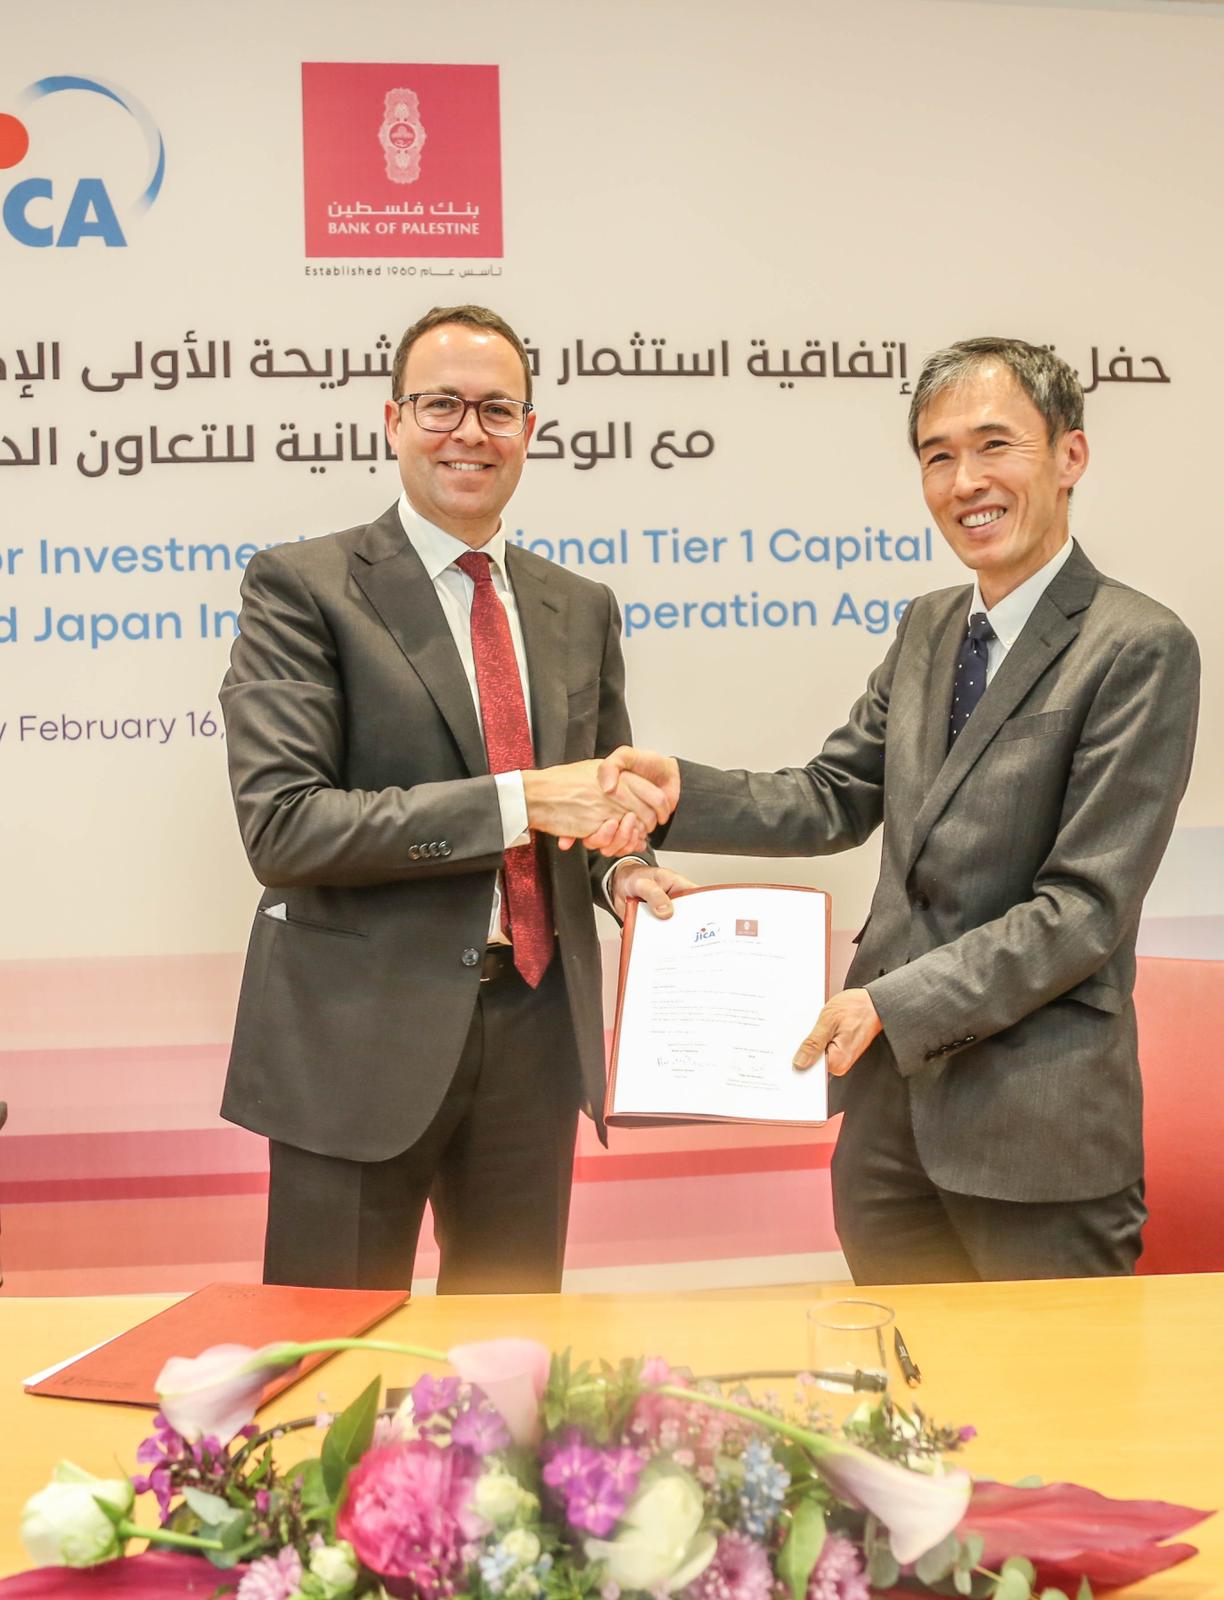 الوكالة اليابانية للتعاون الدولي "جايكا" تستثمر 30 مليون دولار أمريكي في الشريحة الأولى الإضافية من أ رس مال بنك فلسطين